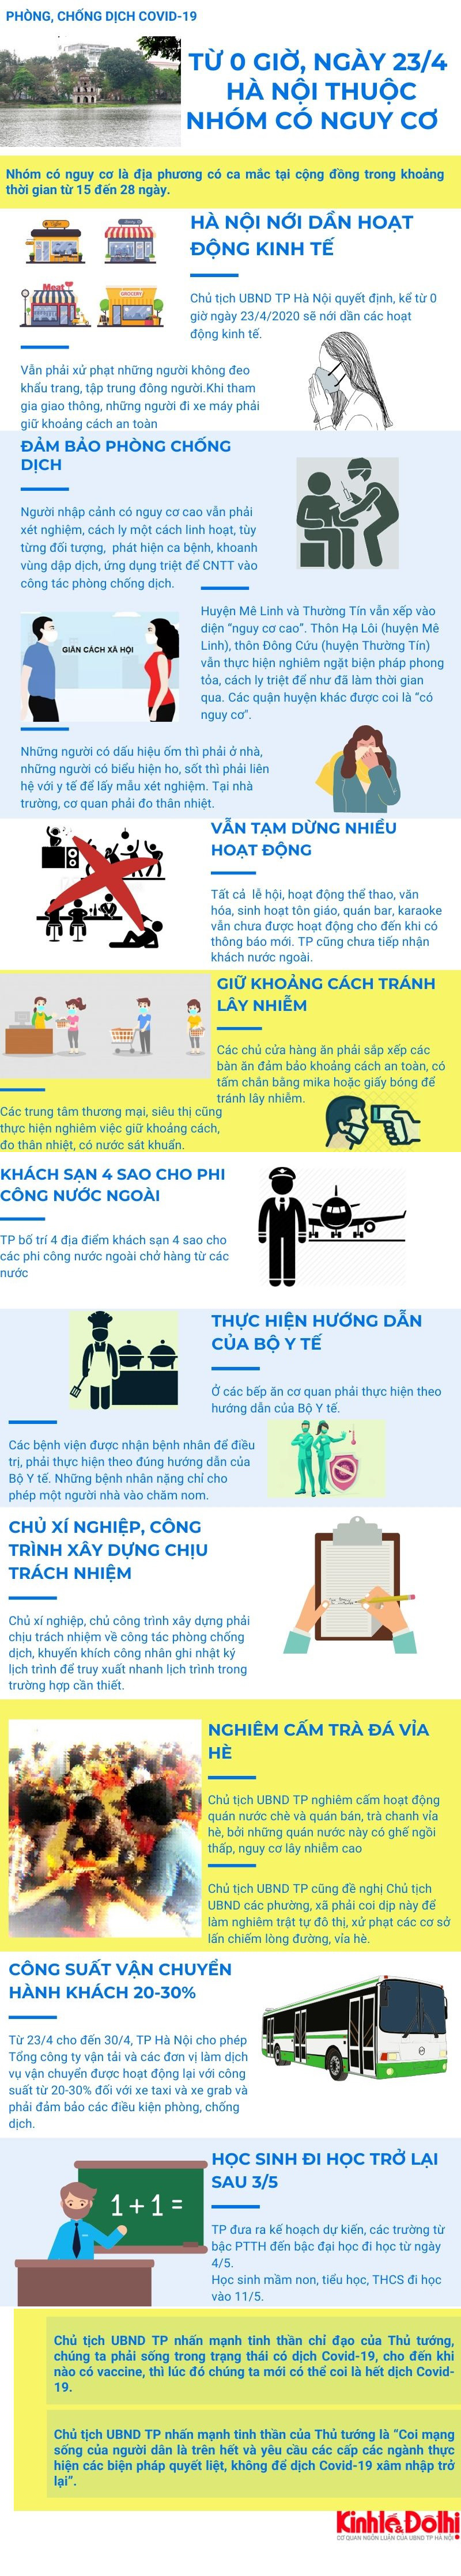 [Infographic] Chi tiết các hoạt động phòng, chống dịch Covid-19 của Hà Nội từ 0 giờ ngày 23/4 - Ảnh 1.